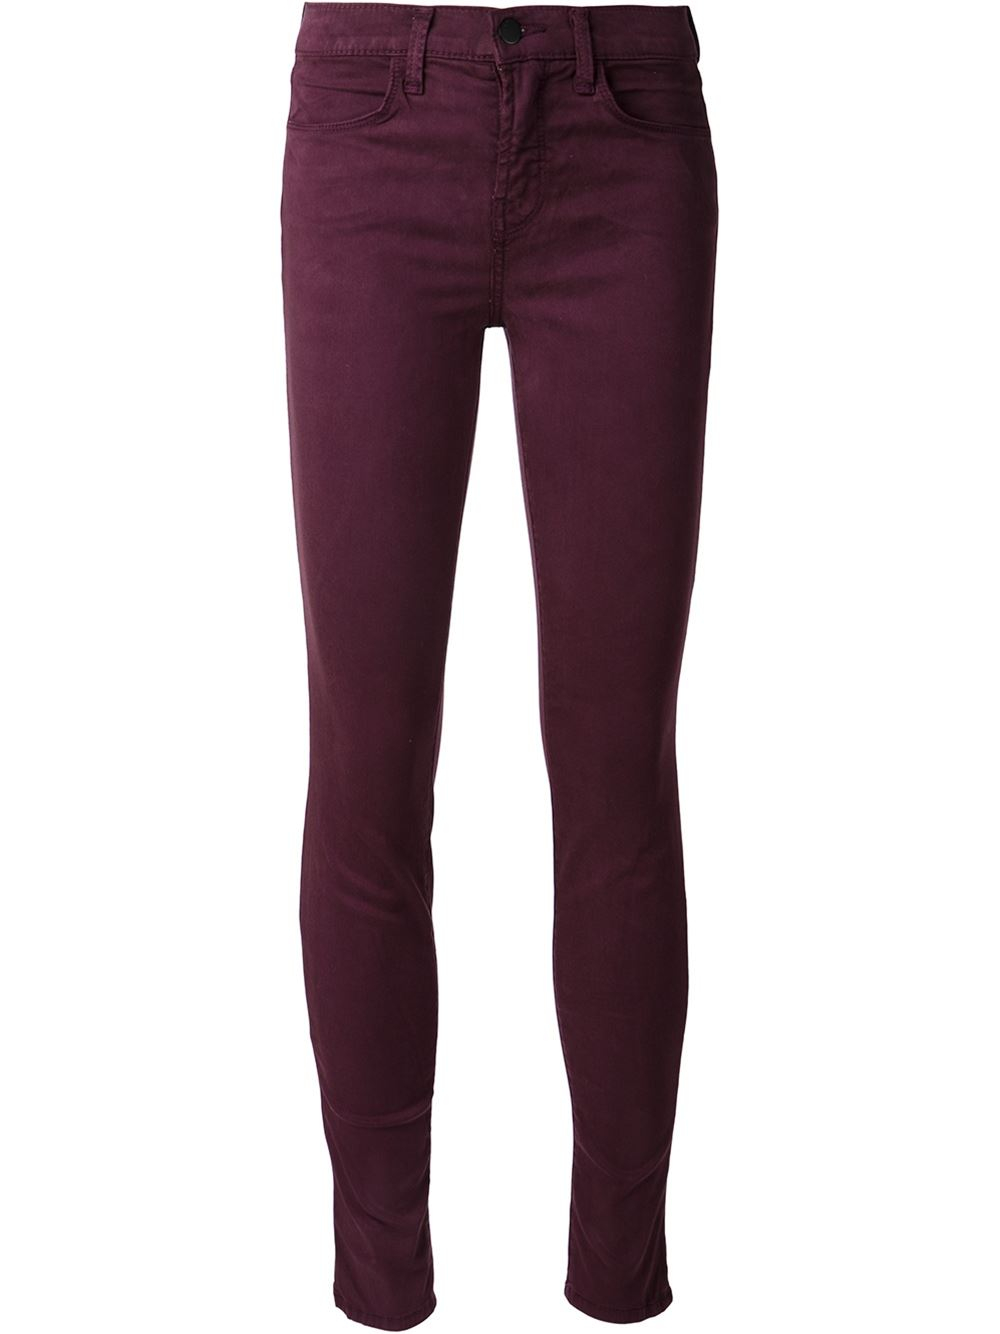 Lyst - J Brand Skinny Jeans in Purple